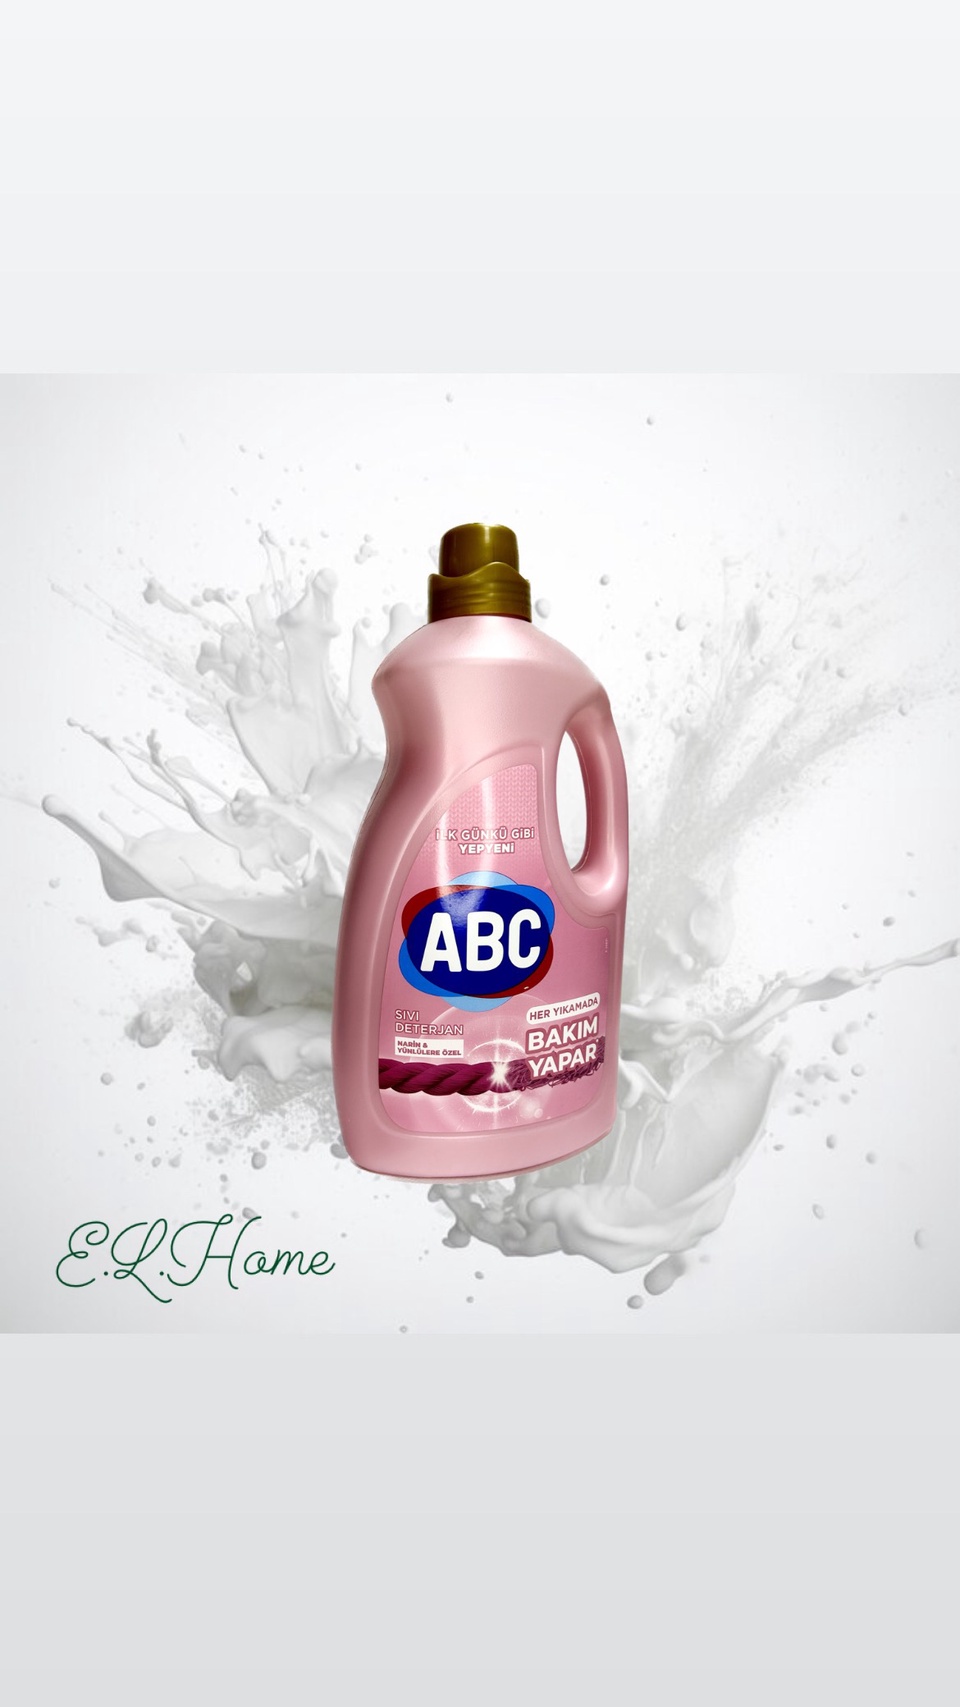 Гель для стирки деликатных вещей ABC 3л - 600 ₽, заказать онлайн.